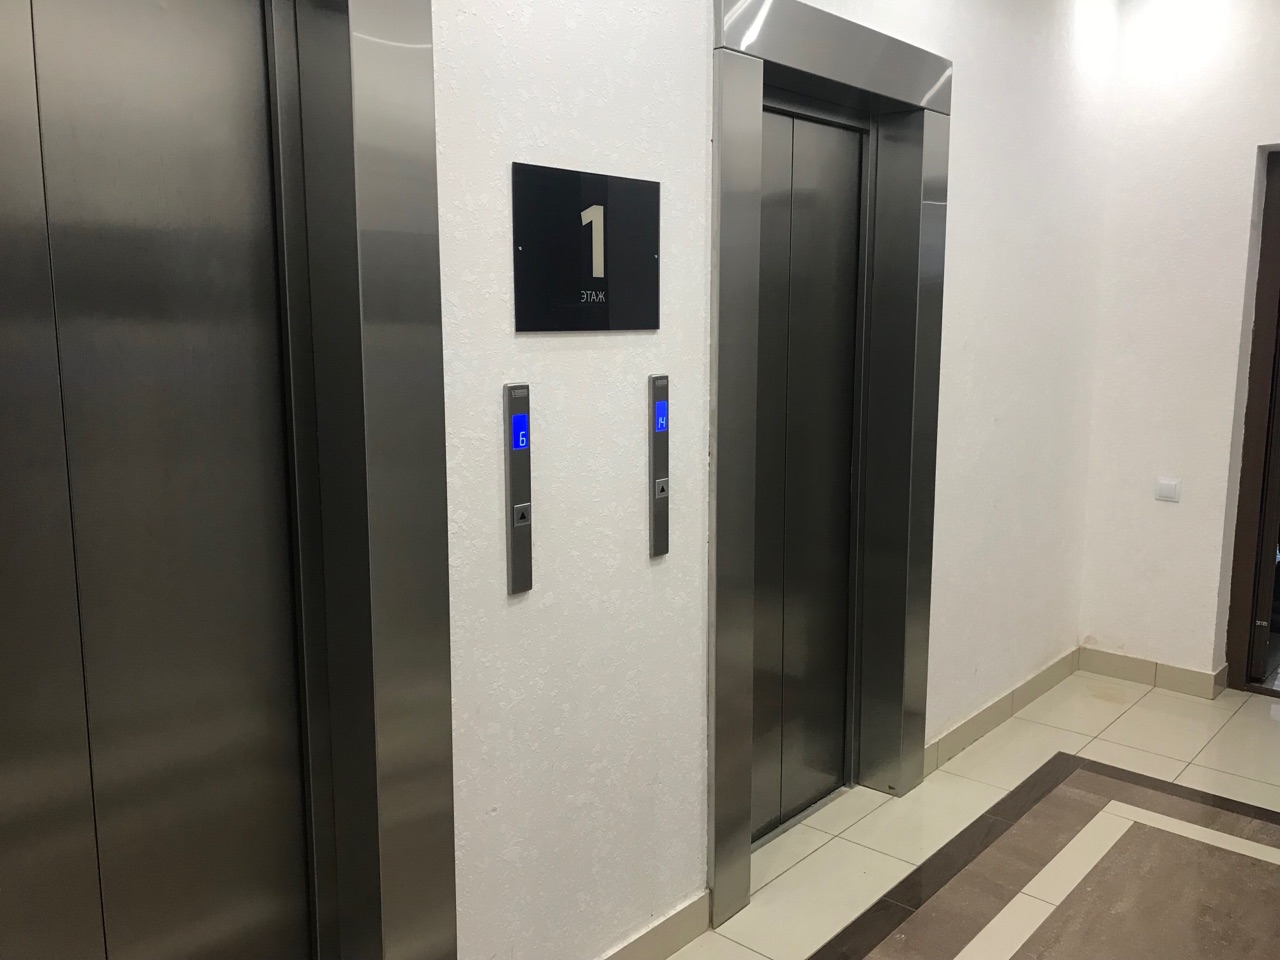 193 лифта планируется заменить в Нижегородской области в 2019 году - фото 1